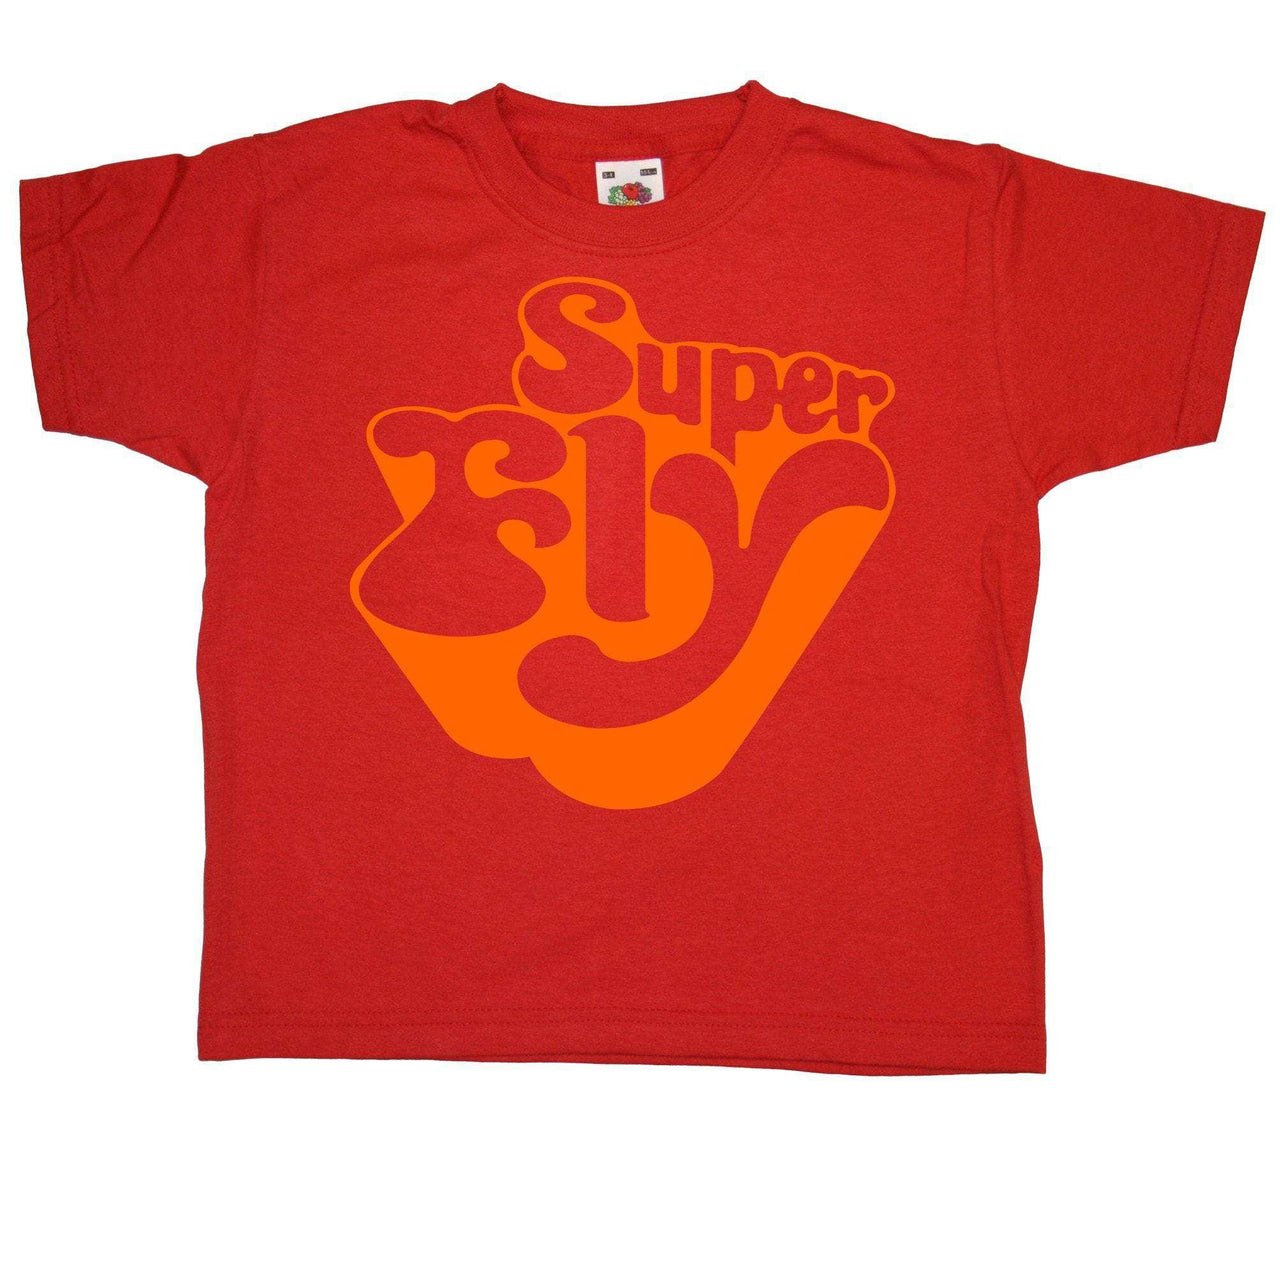 Superfly Kids T-Shirt 8Ball